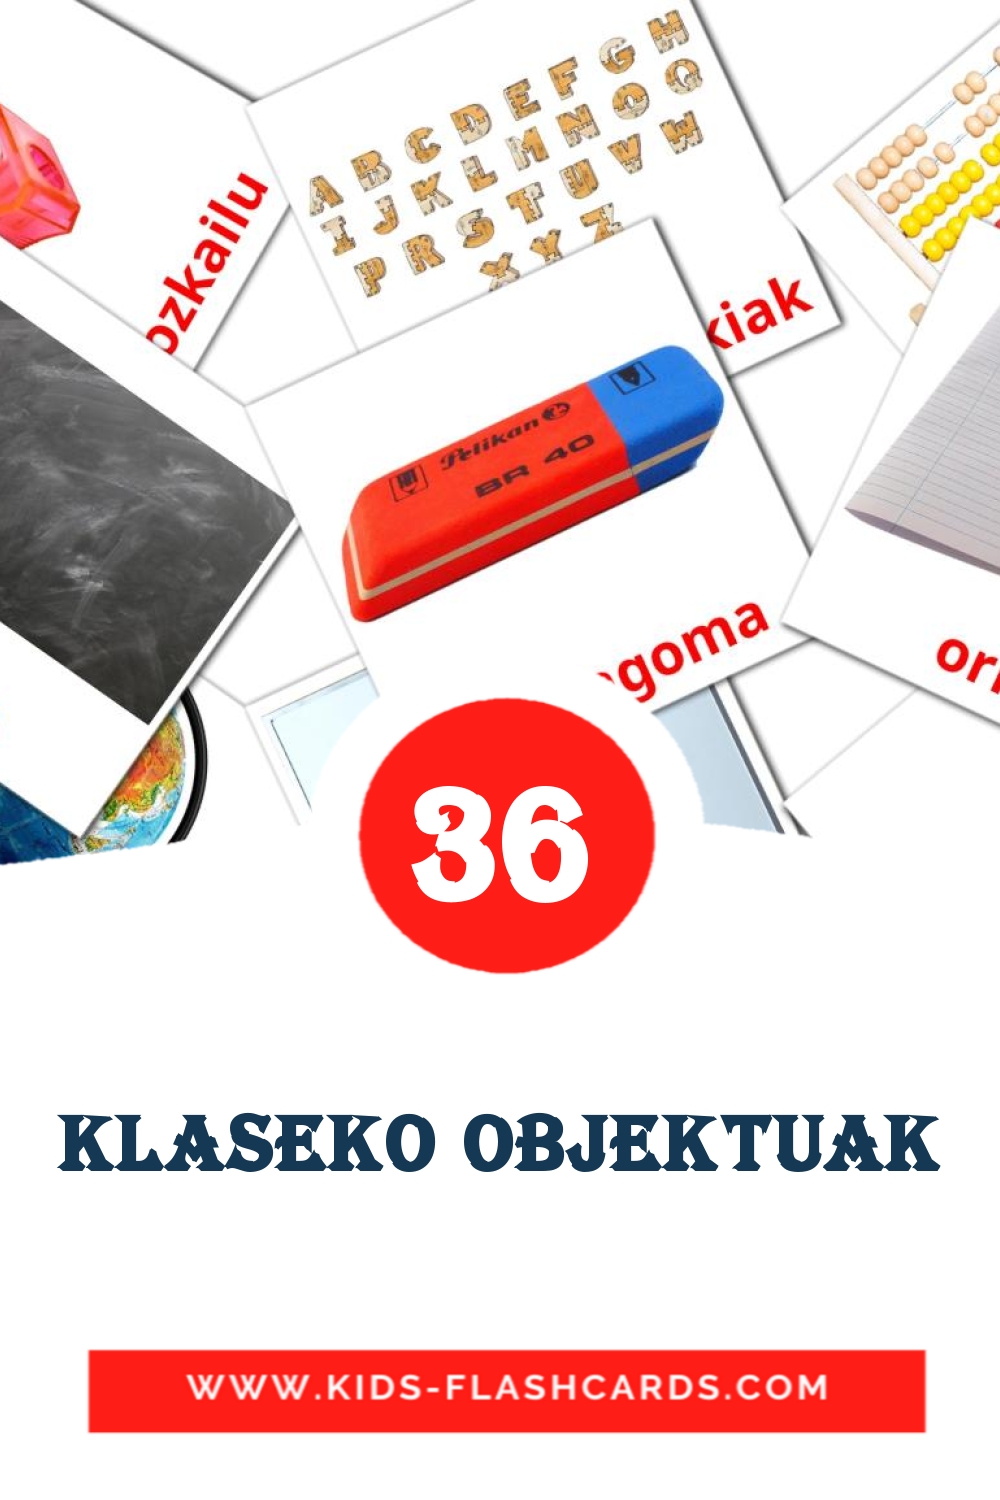 36 tarjetas didacticas de Klaseko objektuak para el jardín de infancia en euskera